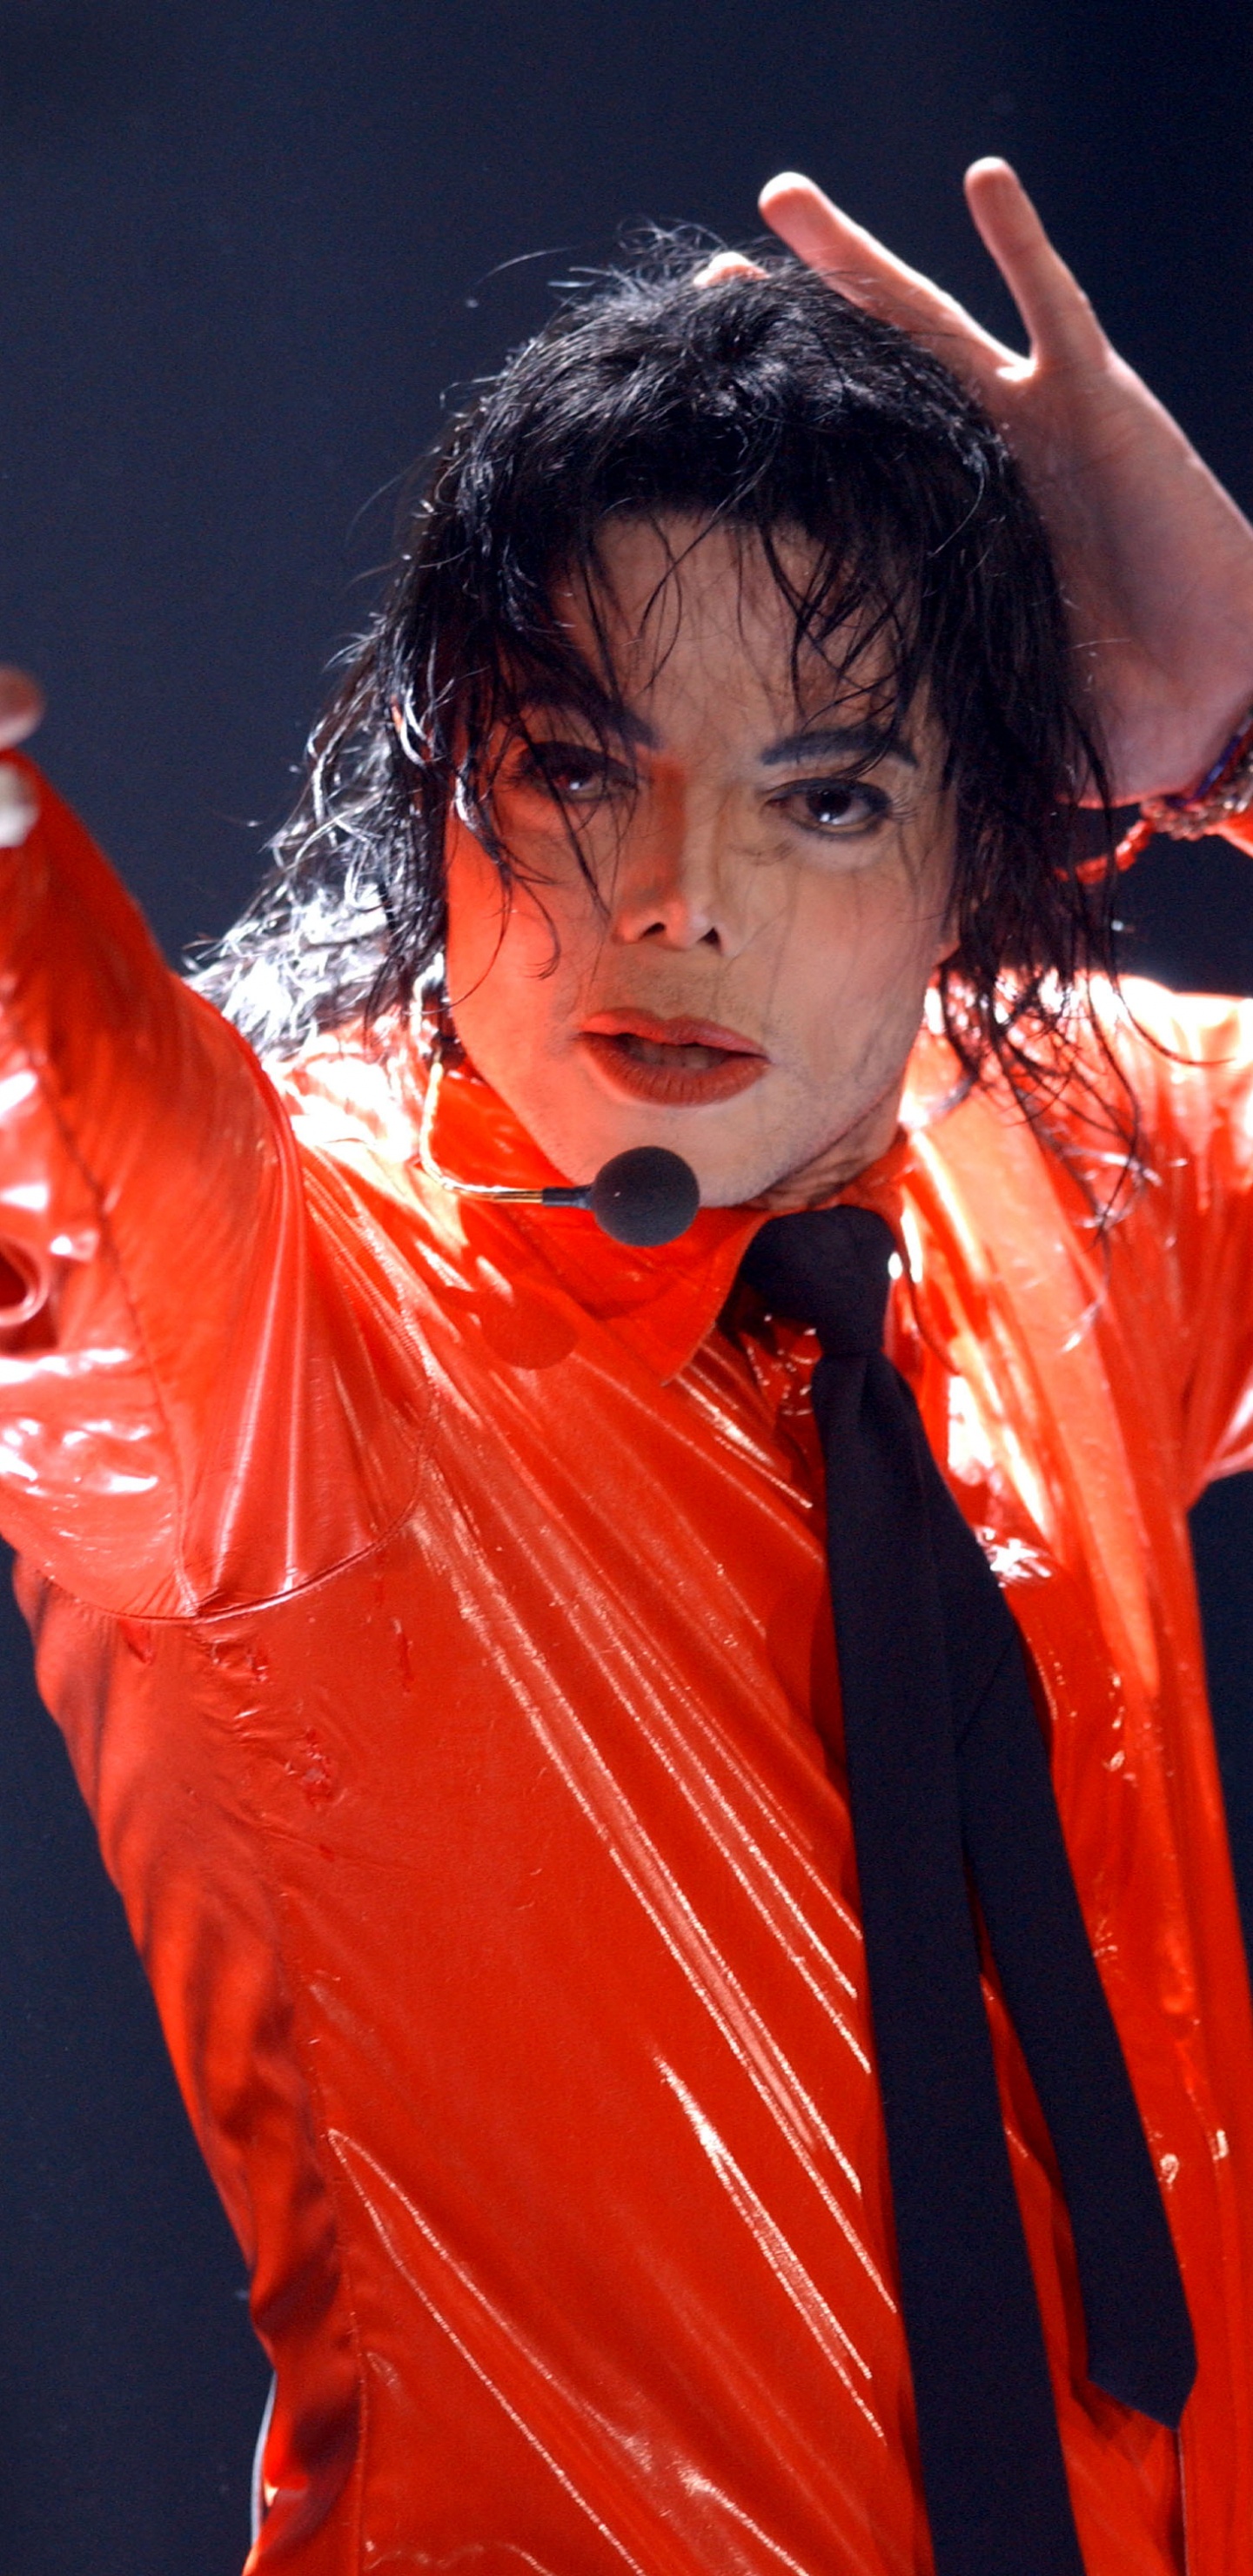 Michael Jackson, Leistung, Darstellende Kunst, Sänger, Stirn. Wallpaper in 1440x2960 Resolution